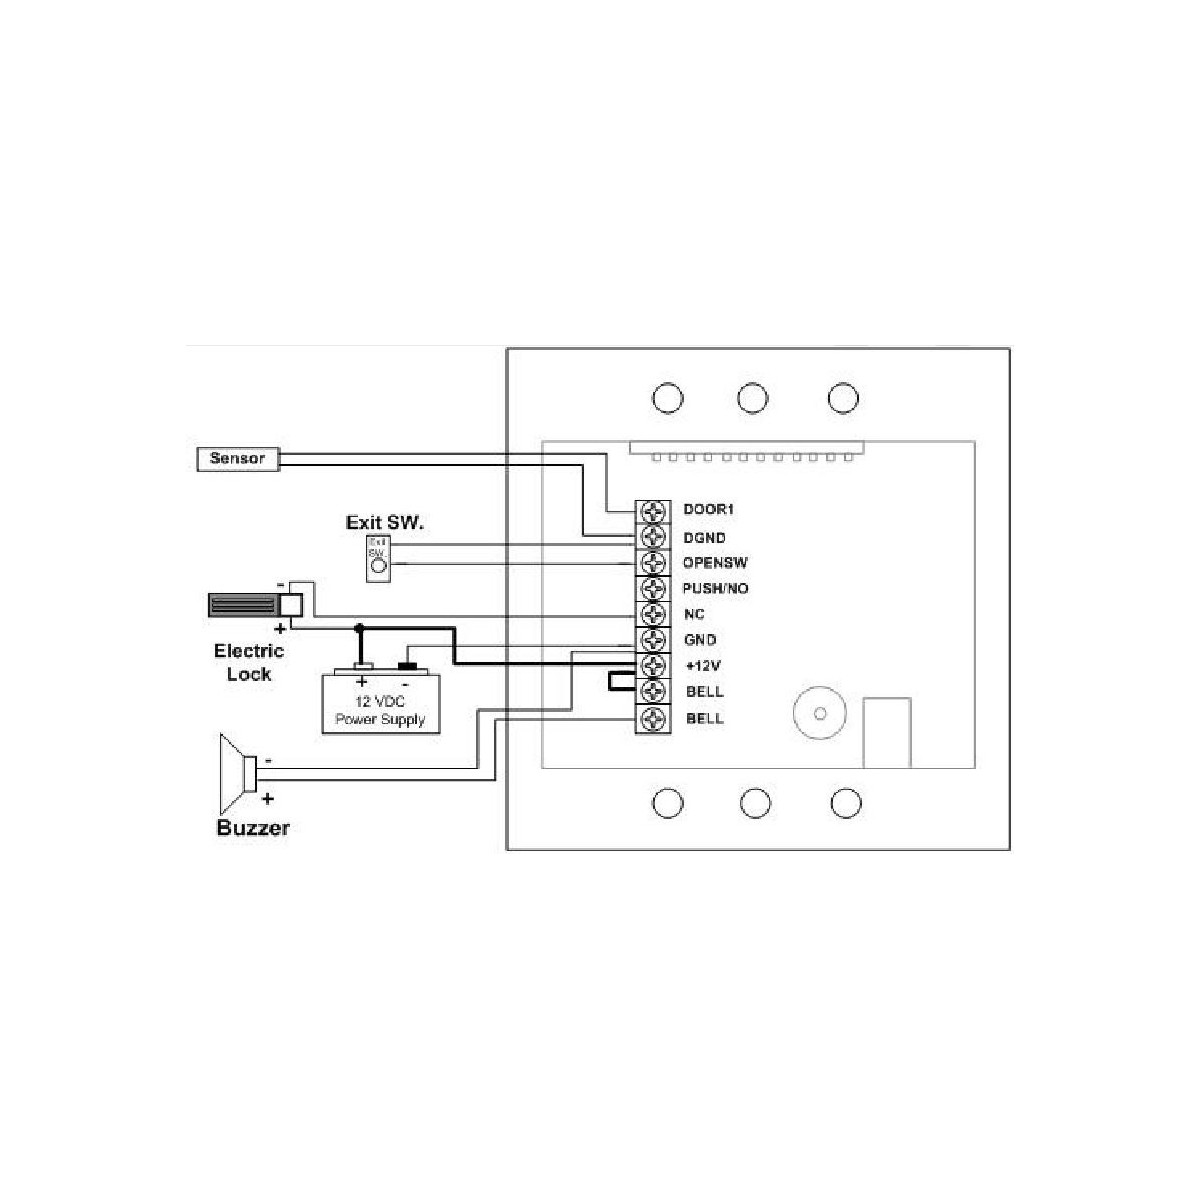 Serratura elettronica RFID + Tastiera codice 13.56 MHz relè apriporta 12V DC